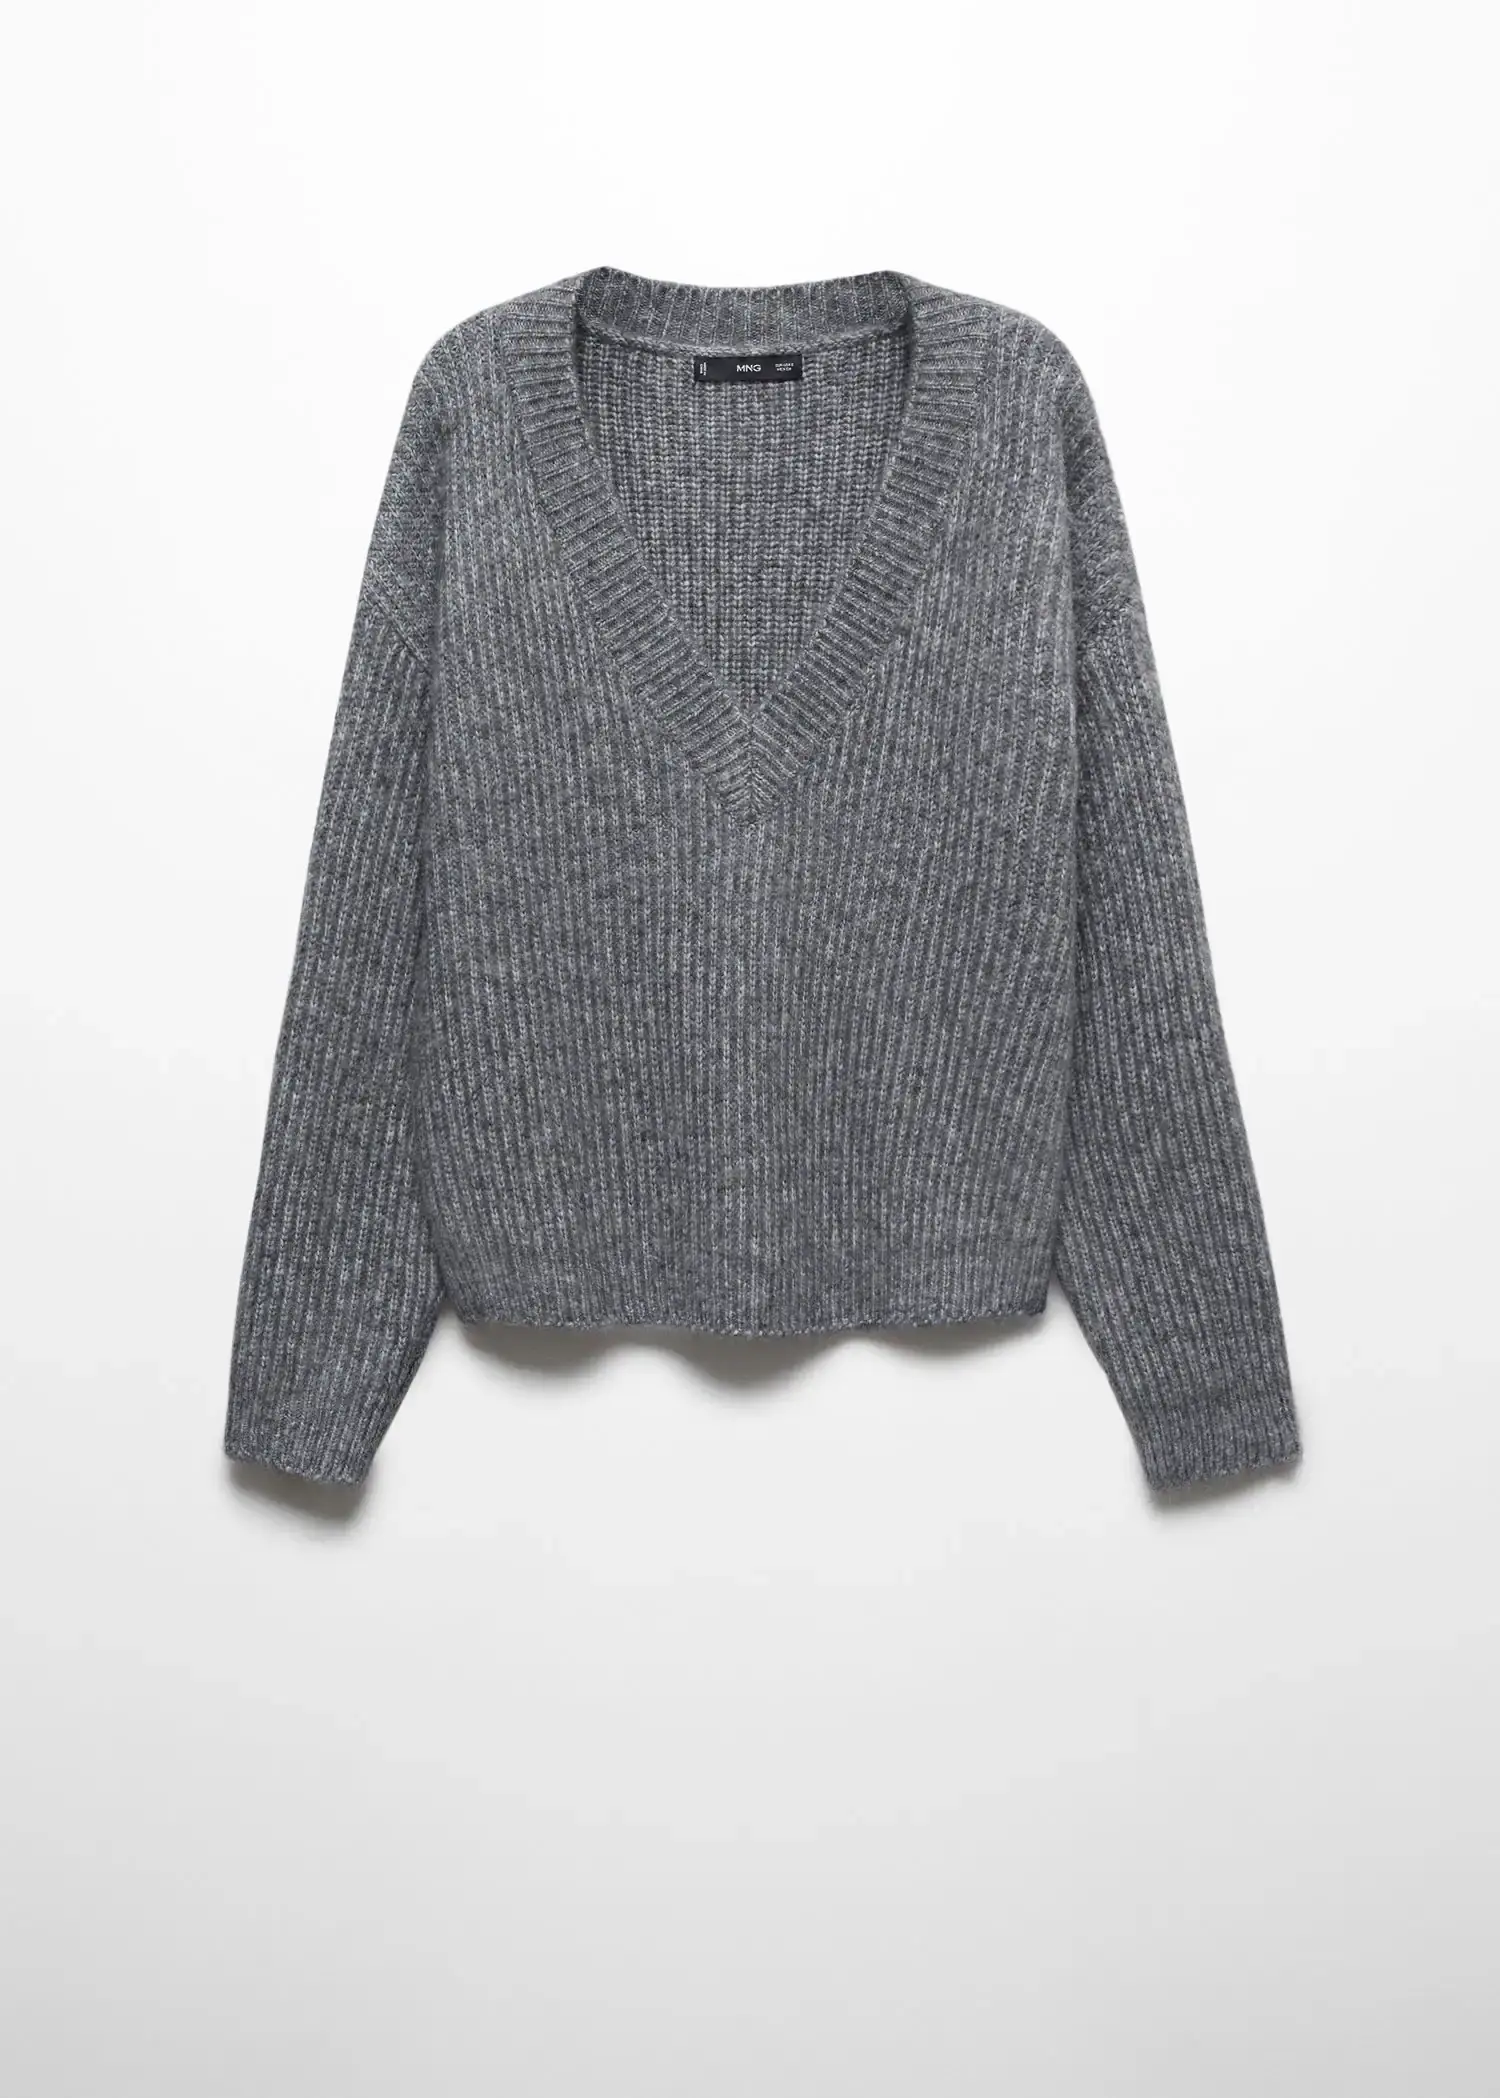 Mango V-neck knit sweater. 1